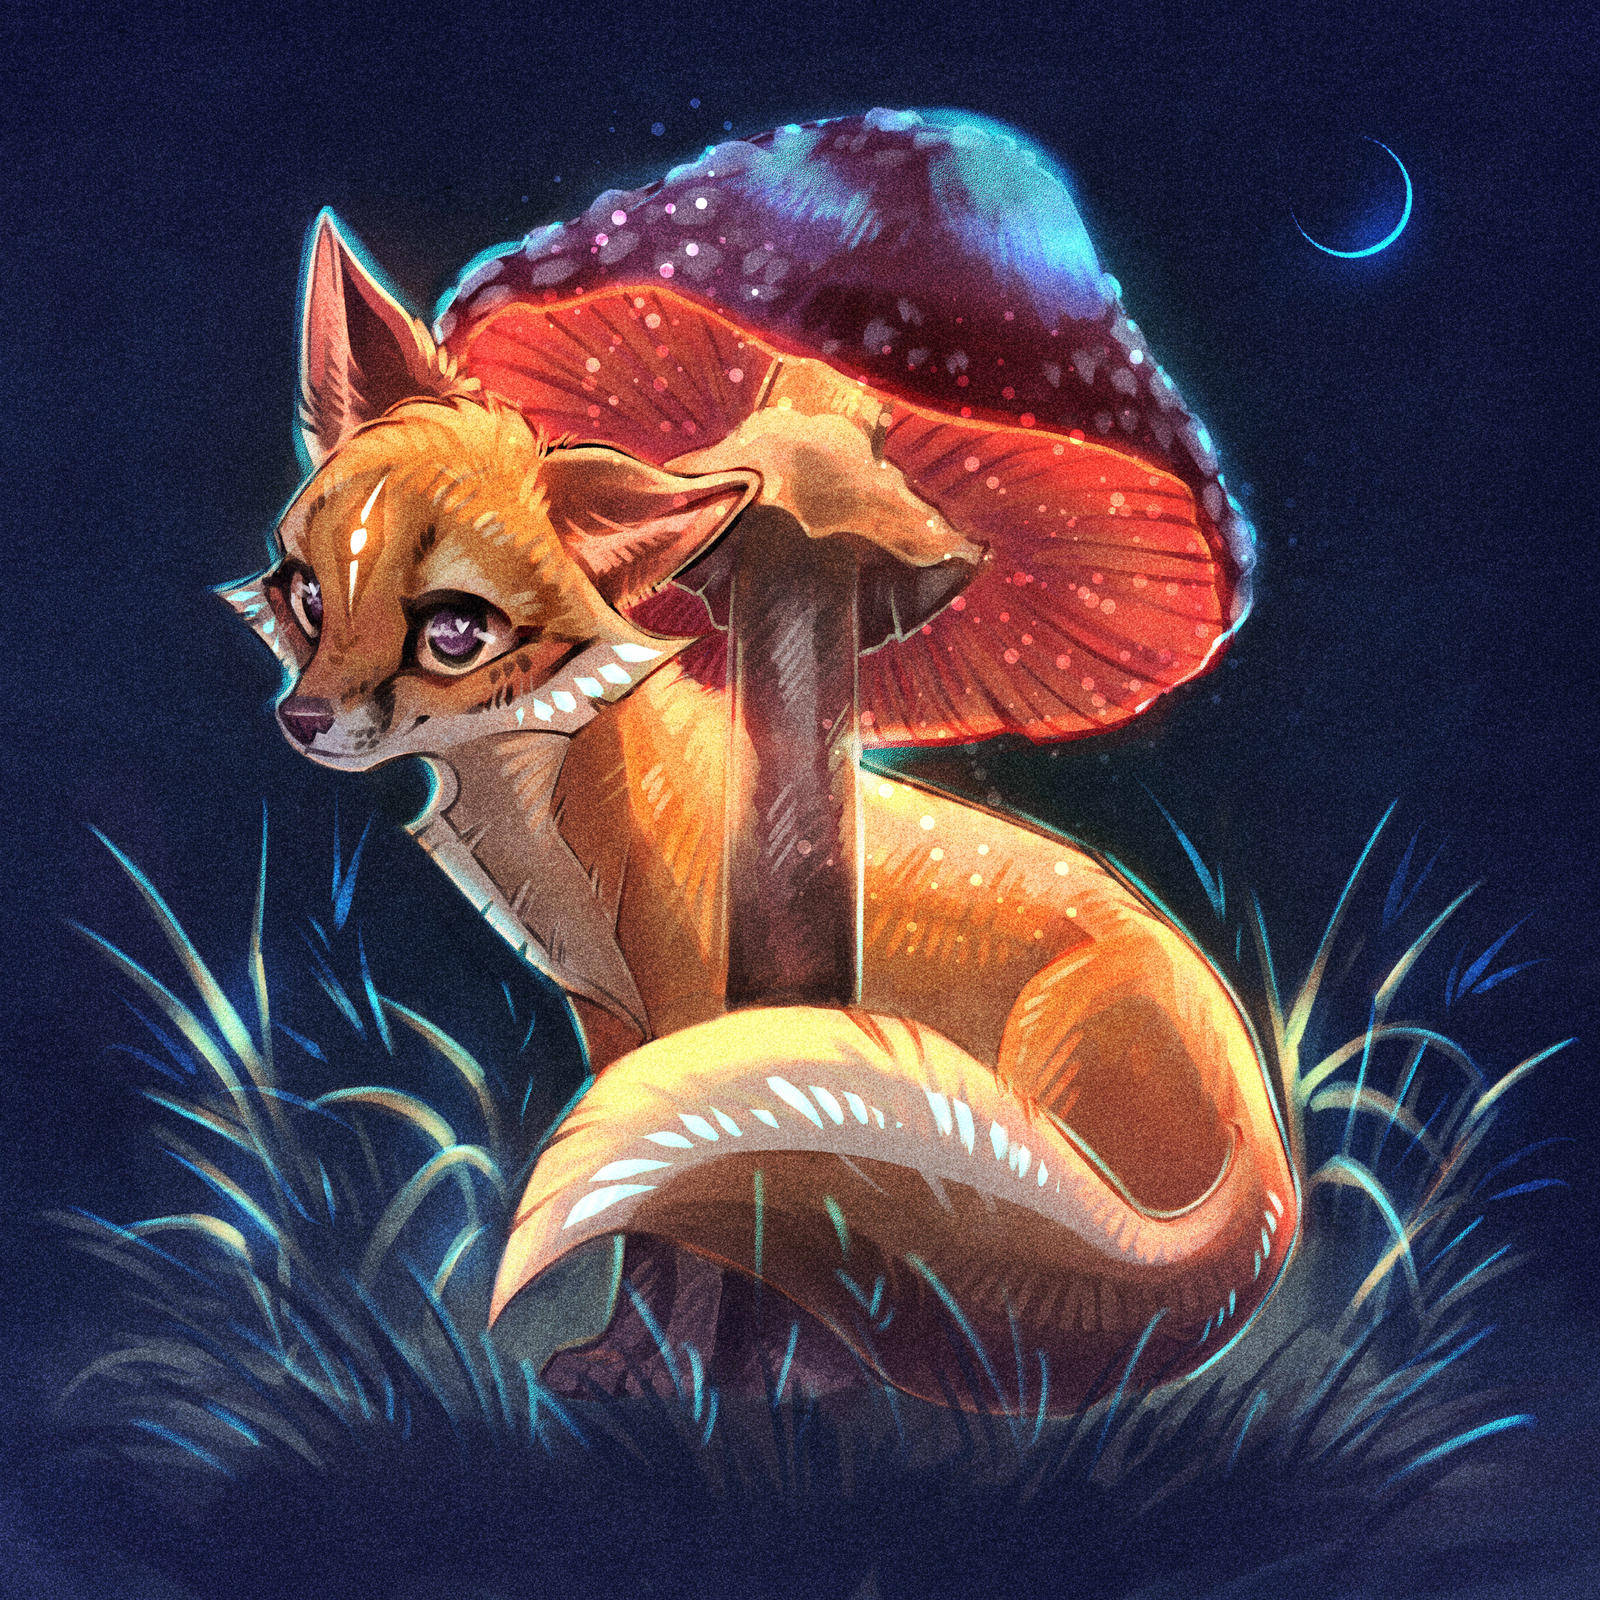 Sad Mushroom by ZeTrystan on DeviantArt